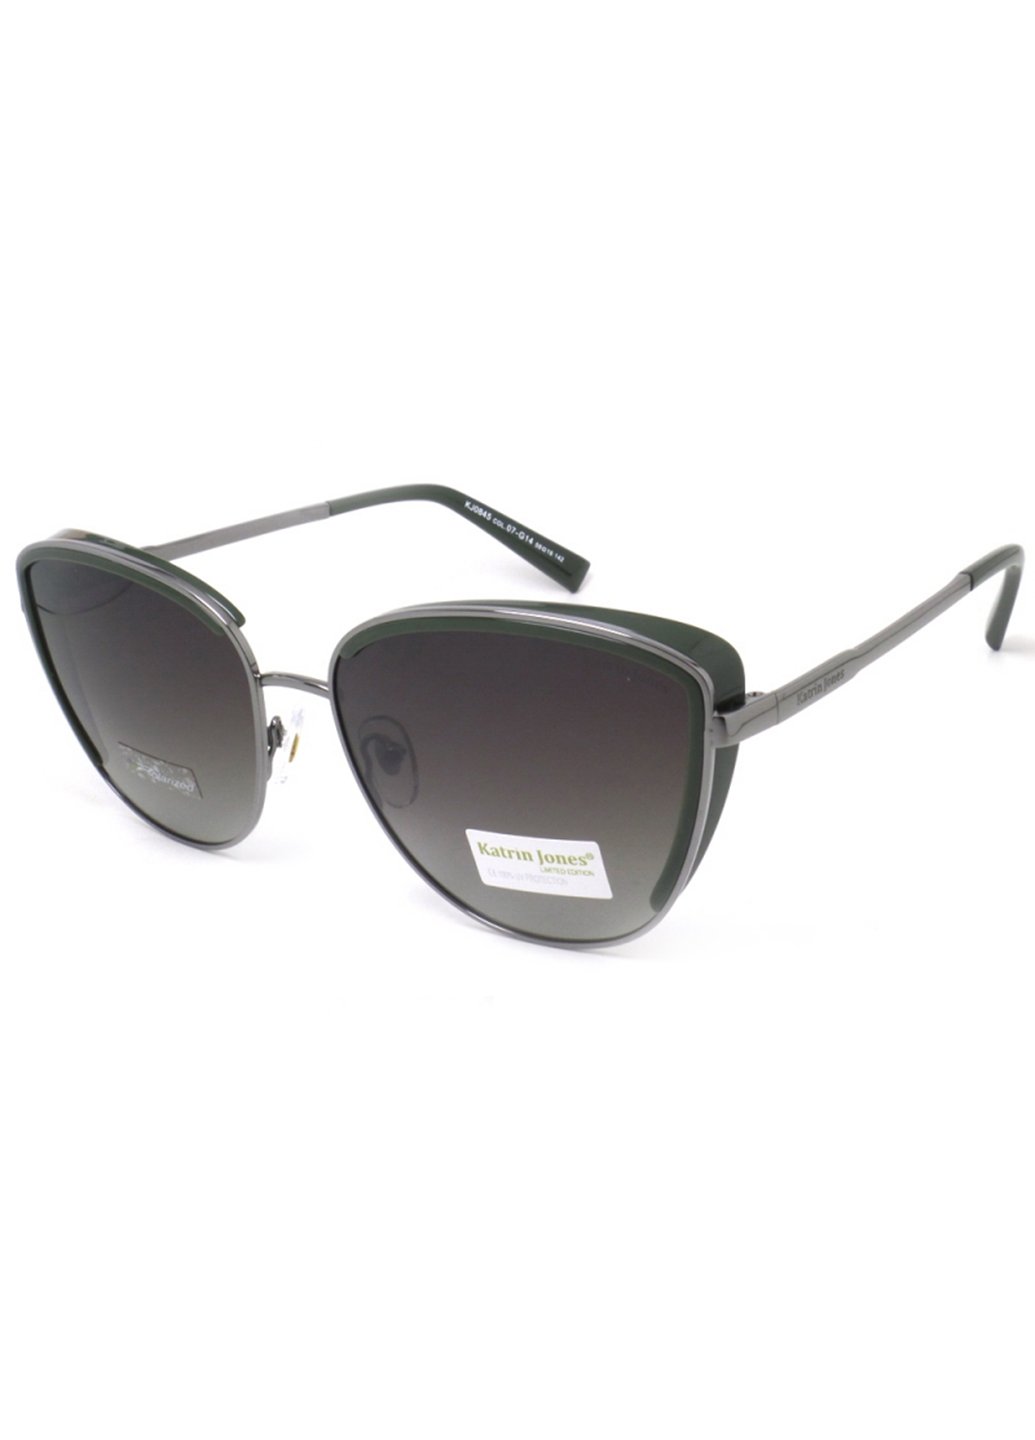 Купить Женские солнцезащитные очки Katrin Jones с поляризацией KJ0845 180014 - Черный в интернет-магазине